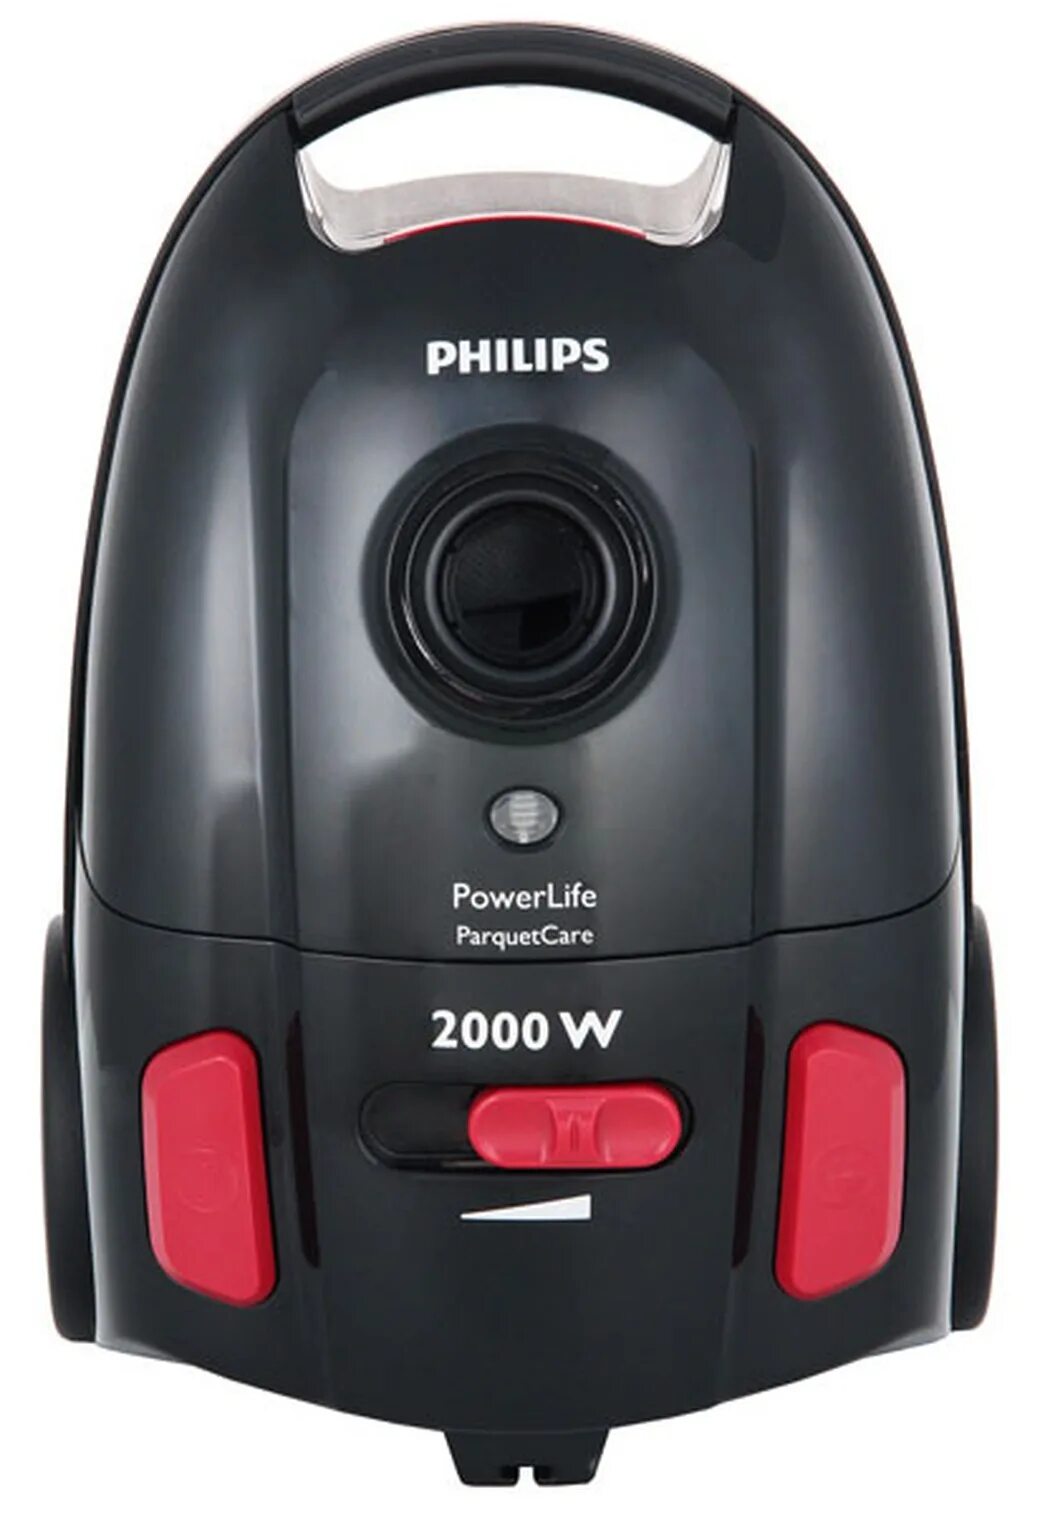 Филипс 2000w. Пылесос Philips fc8454 POWERLIFE. Пылесос Philips 2000w. Пылесос Филипс 2000w. Fc8454 Philips.